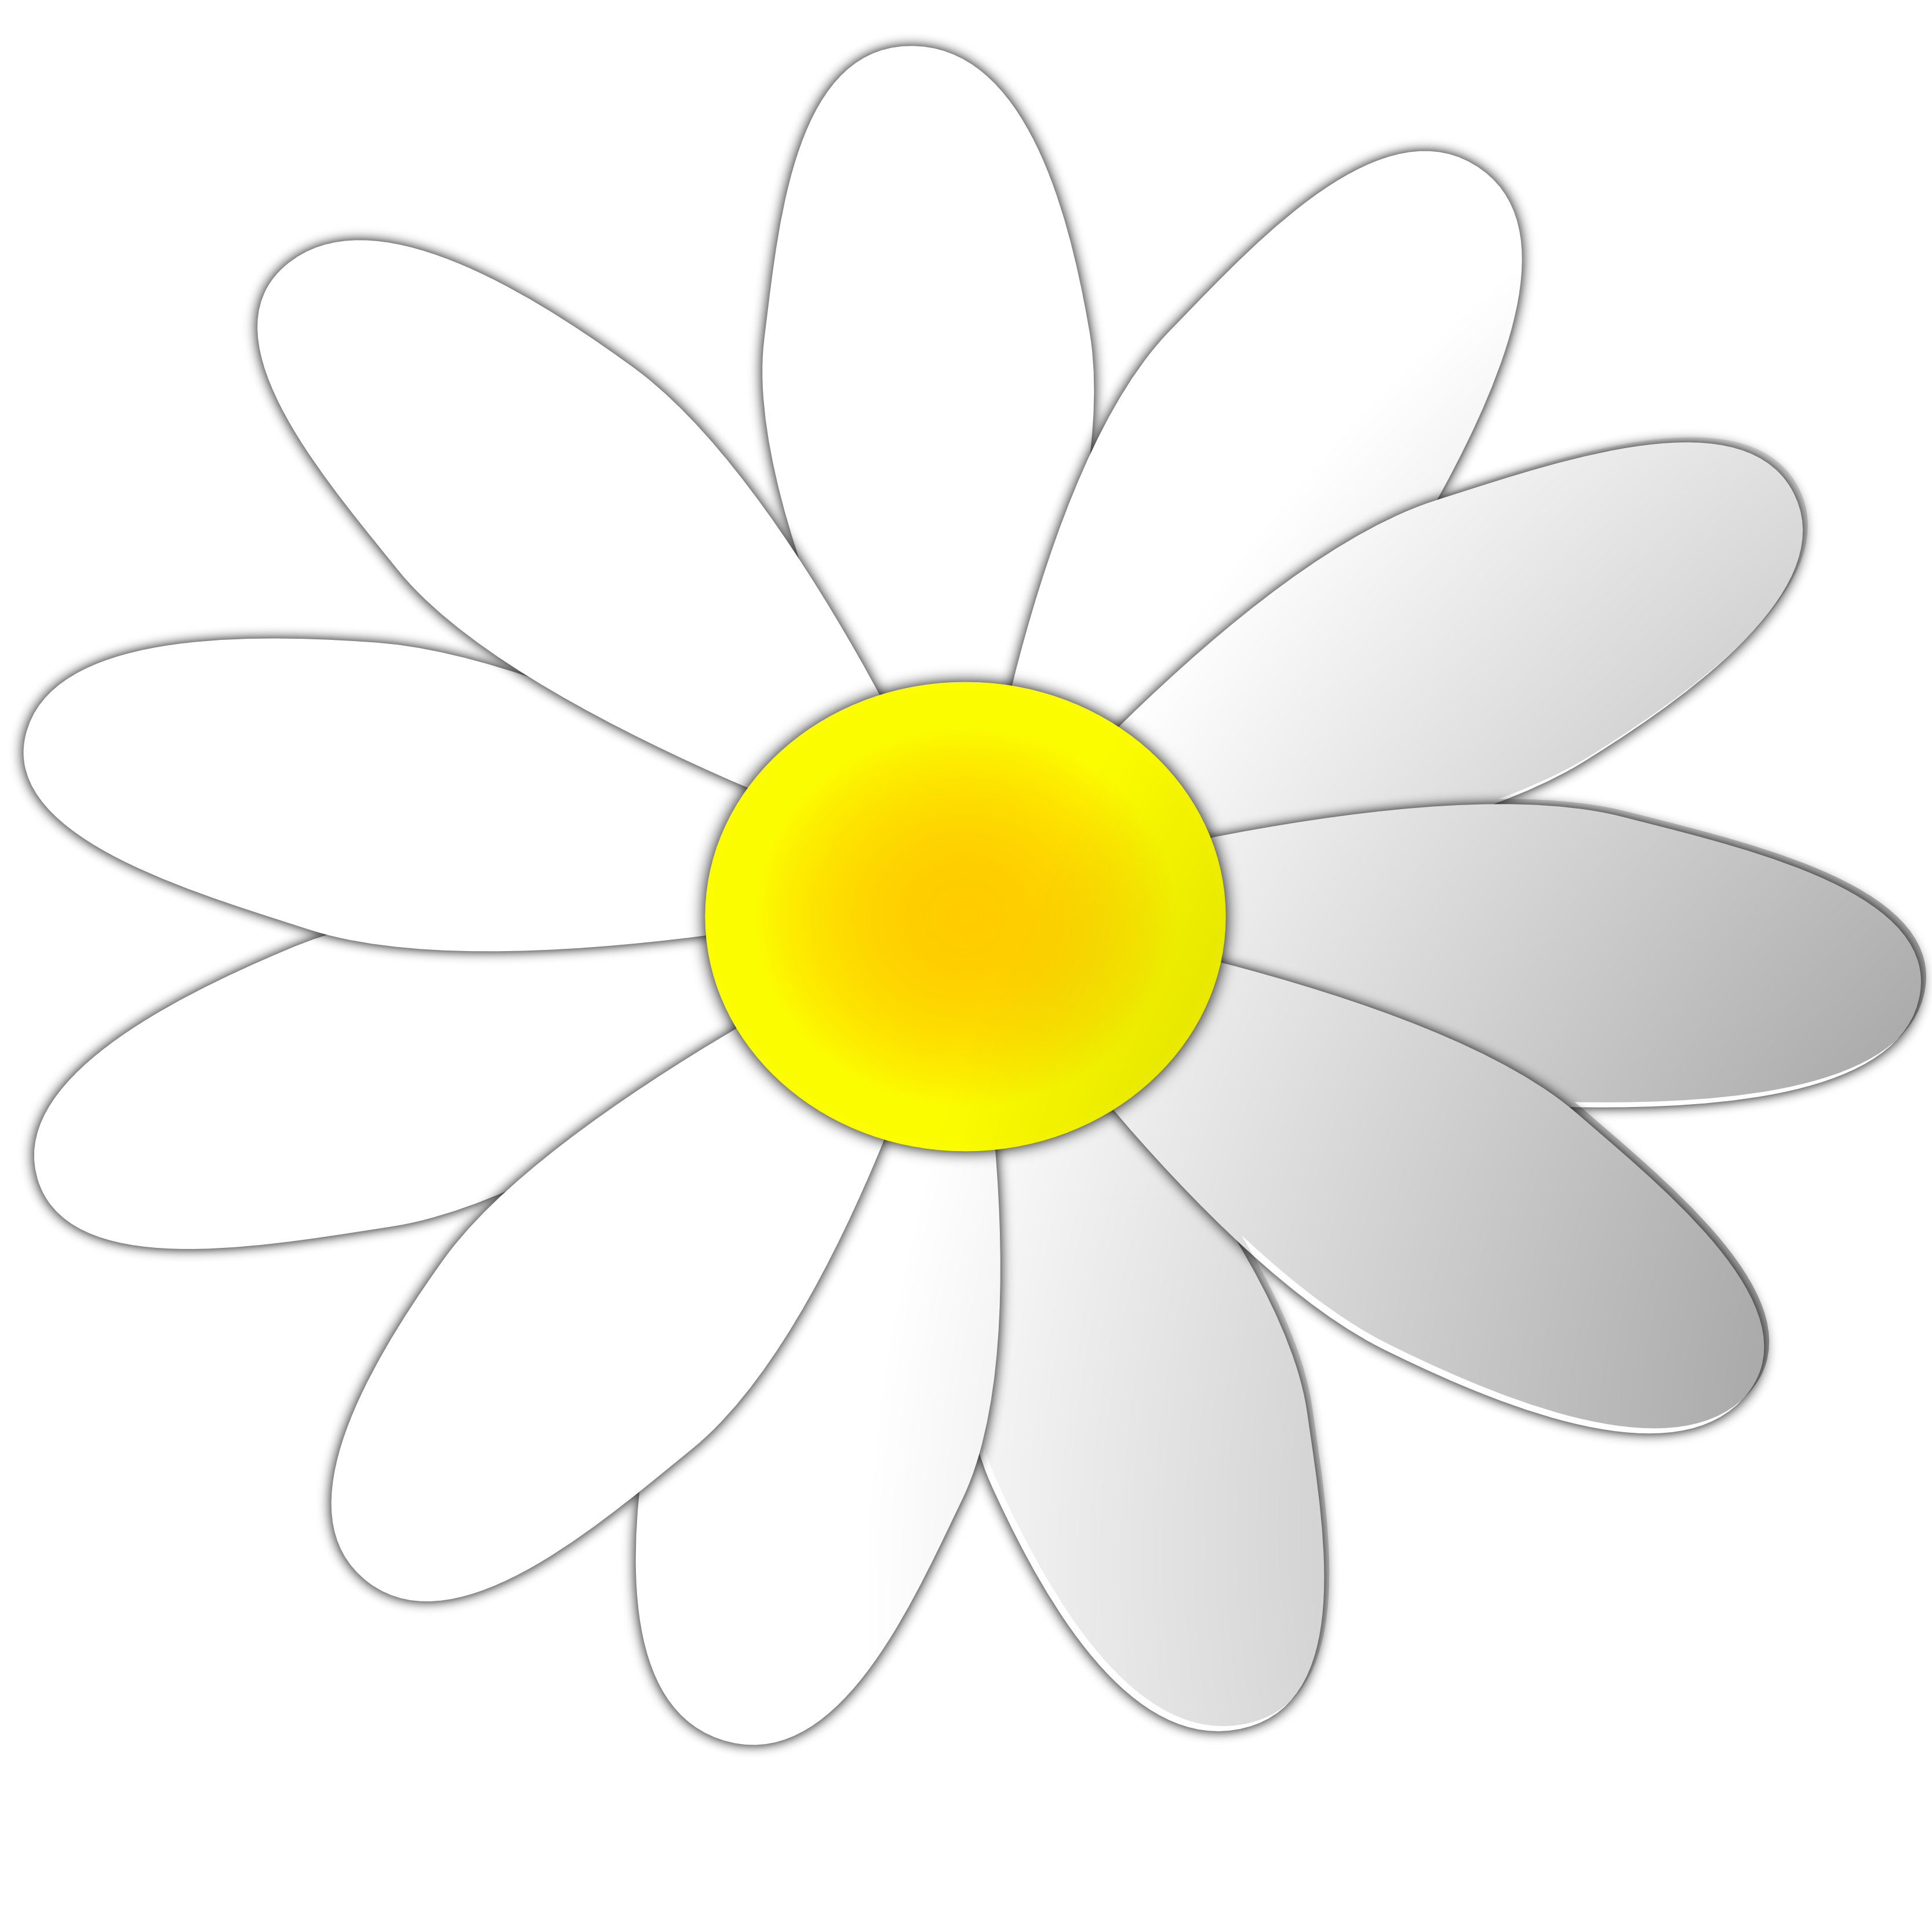 Daisy flower clipart